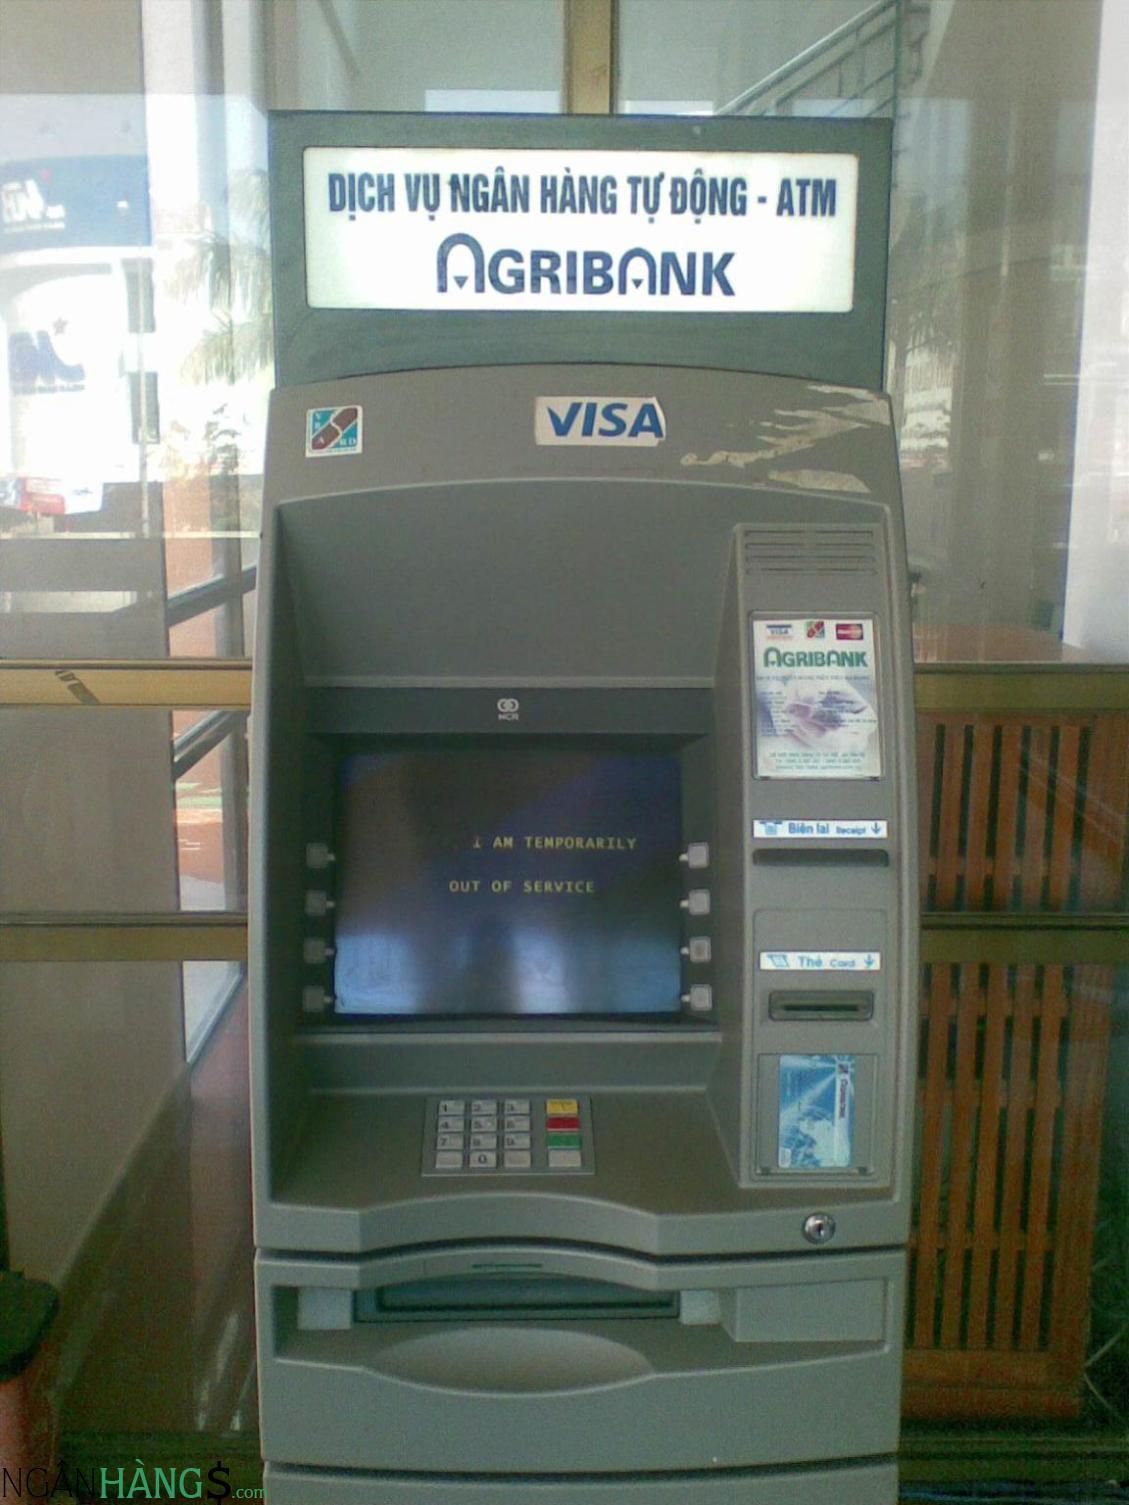 Ảnh Cây ATM ngân hàng Nông nghiệp Agribank 3143 Đại lộ Hùng Vương 1